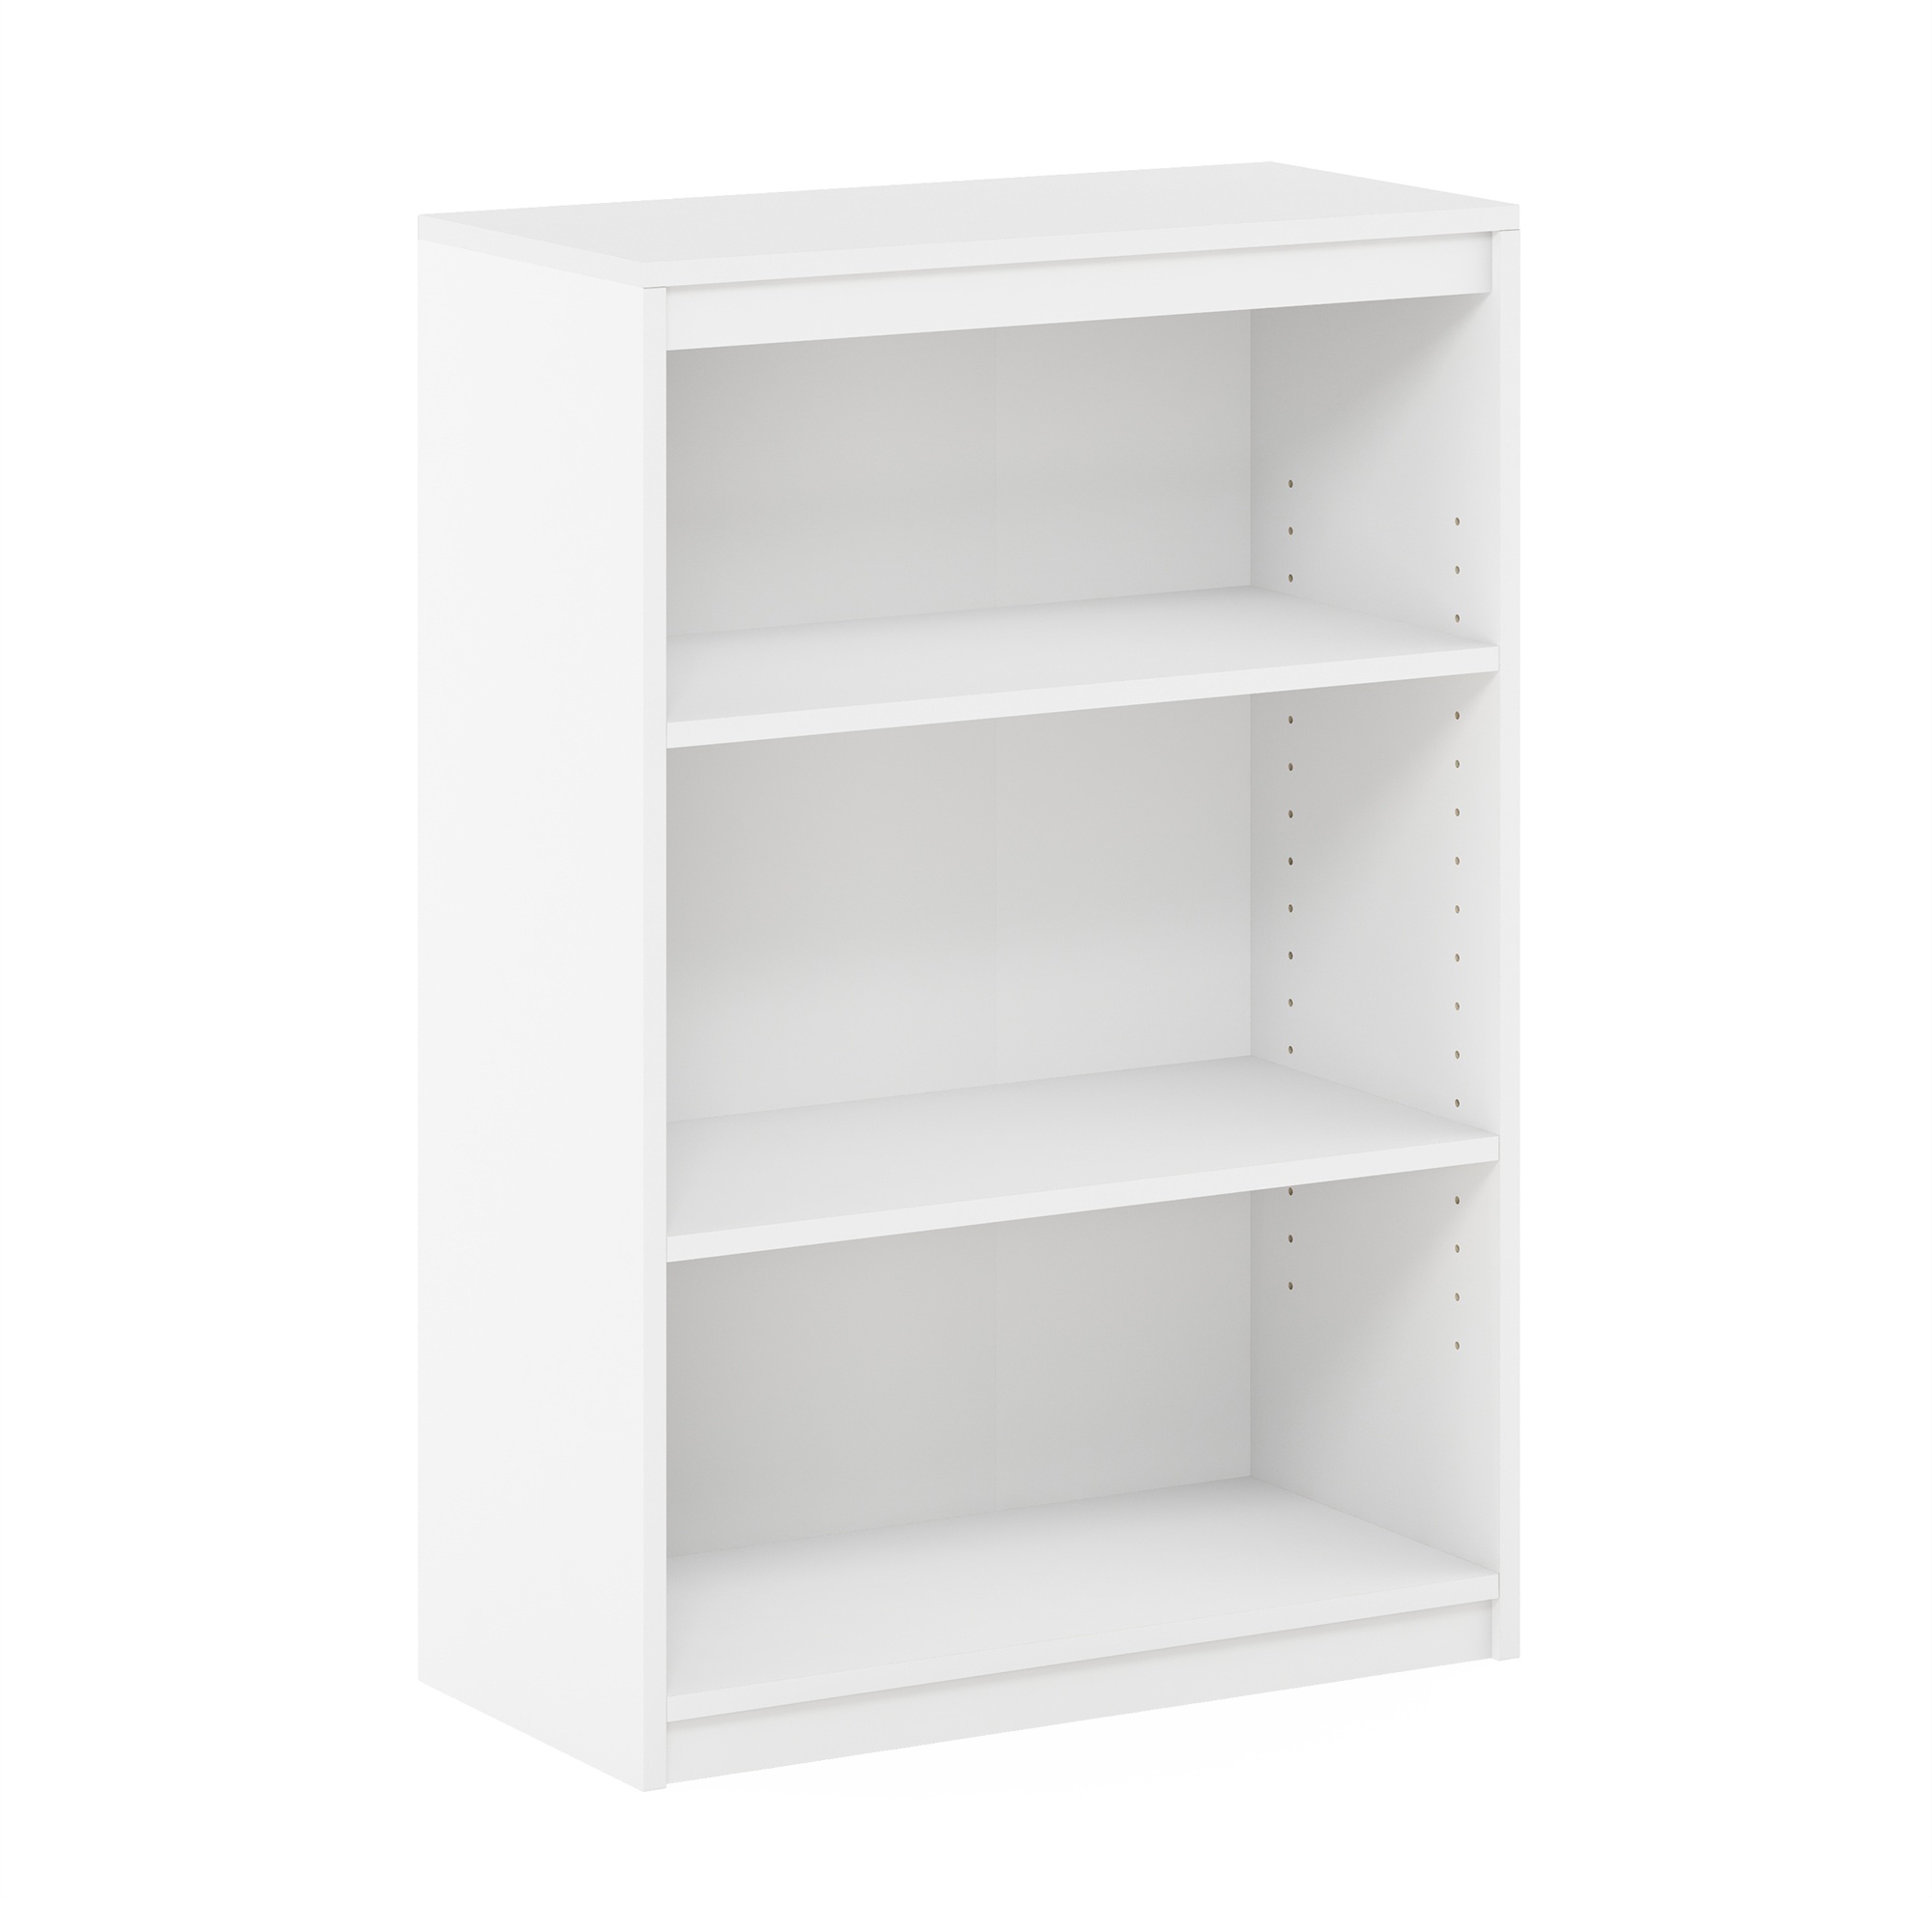 FURINNO Gruen 3-Tier Bookcases, White